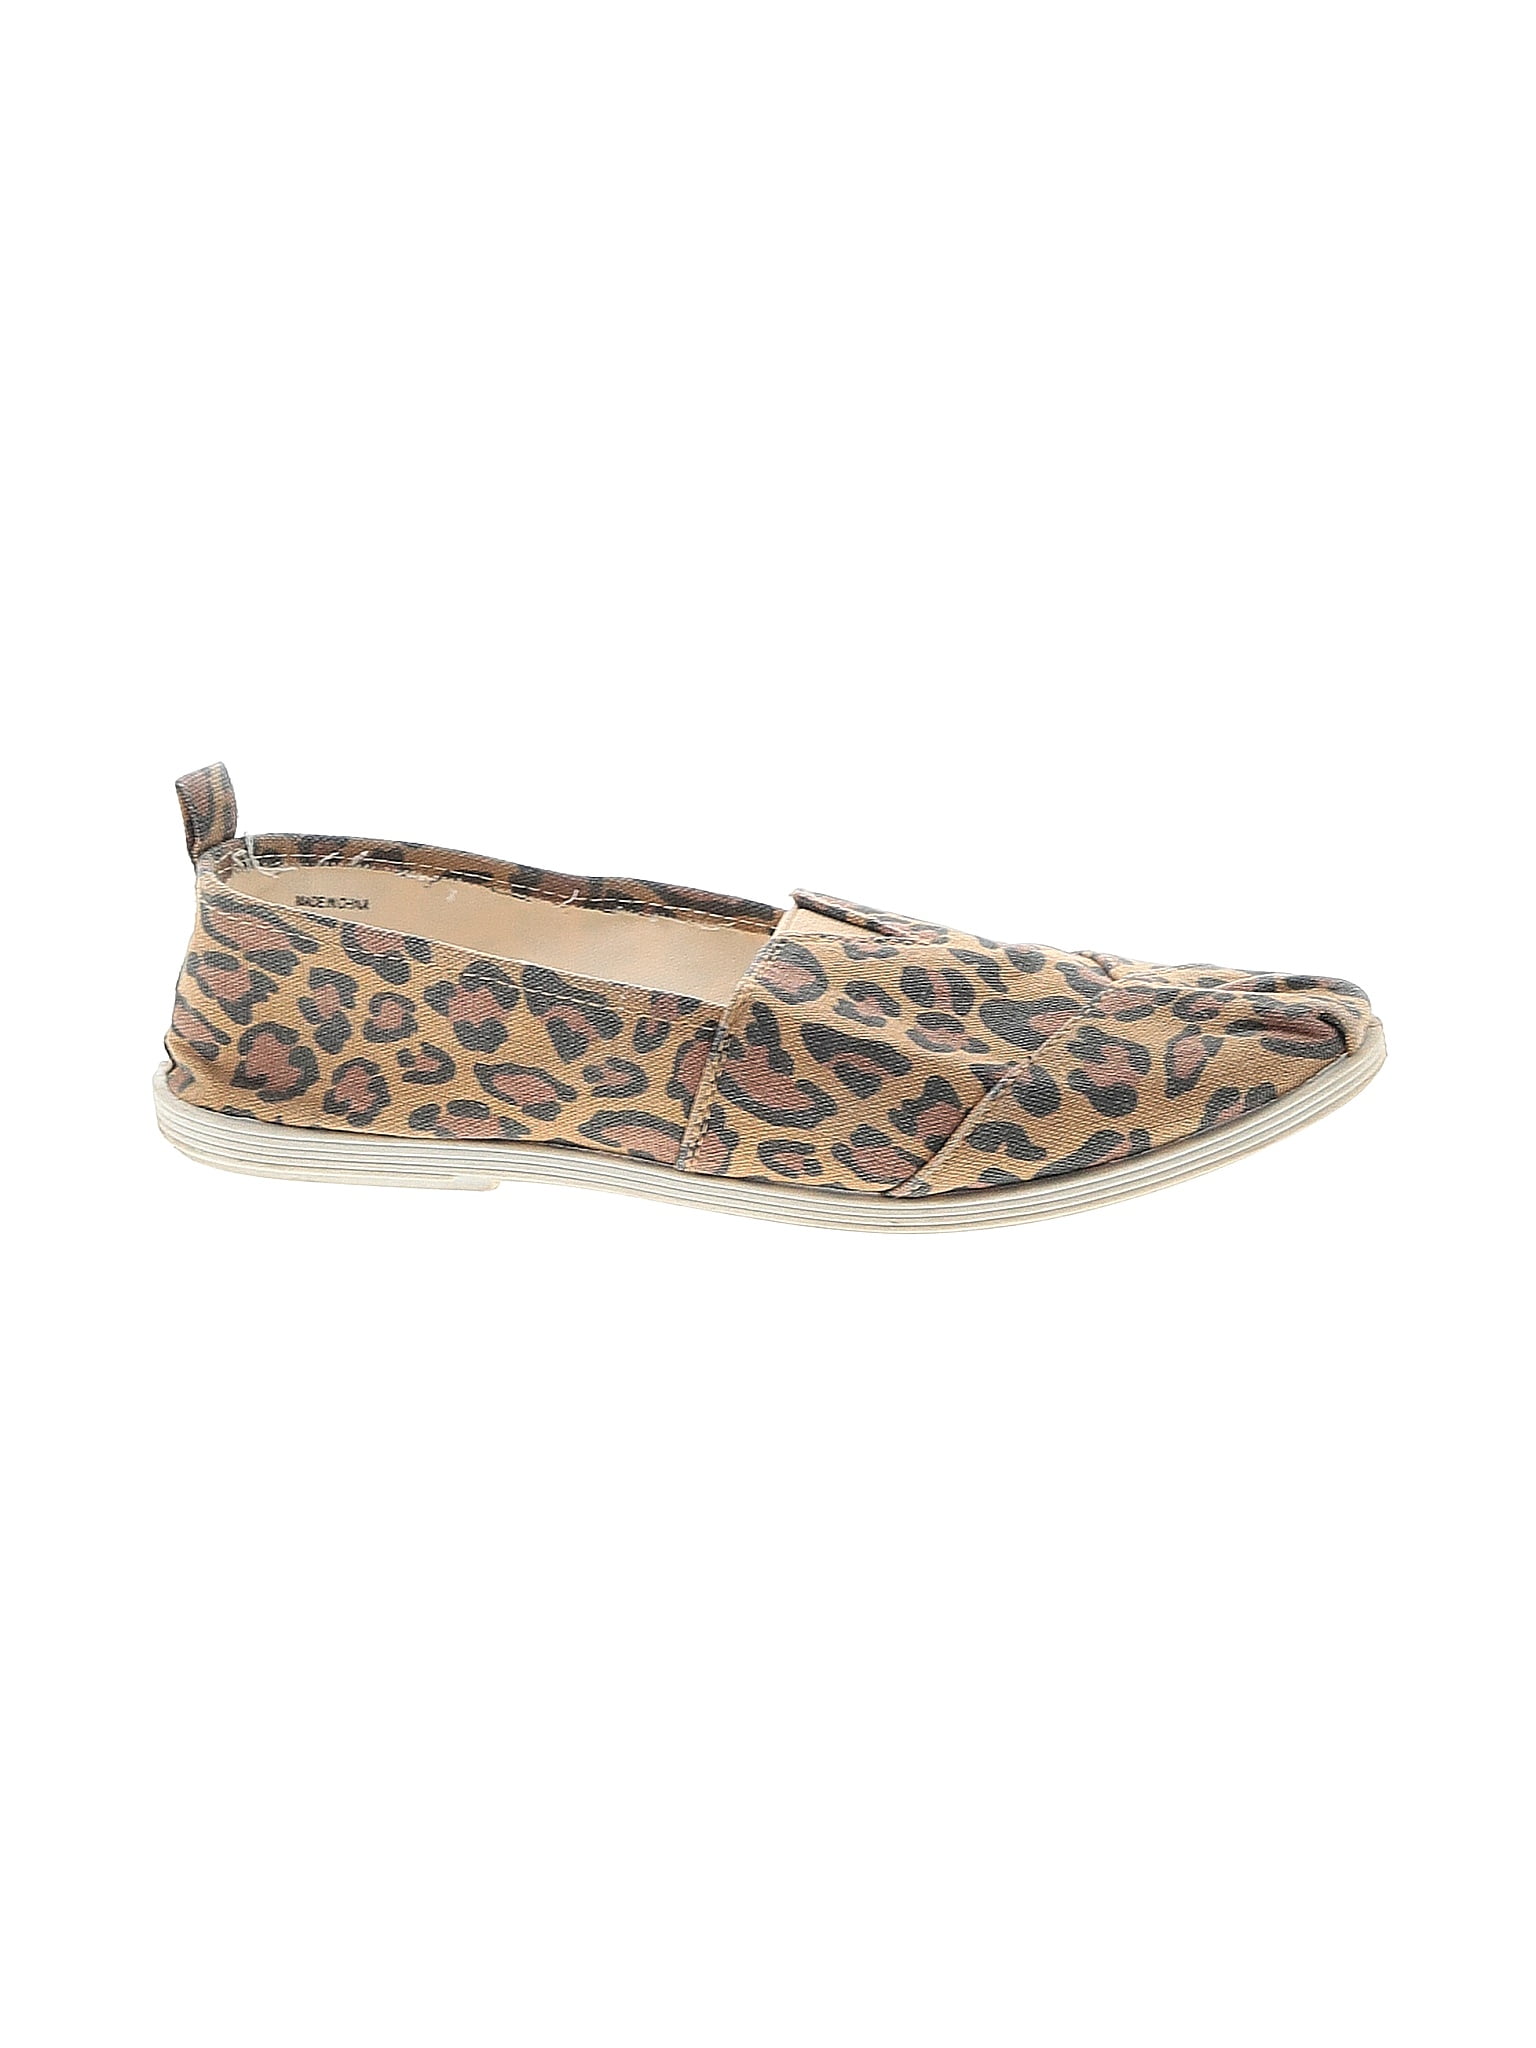 Serra Leopard Print Multi Color Tan Flats Size 7 - 52% off | thredUP